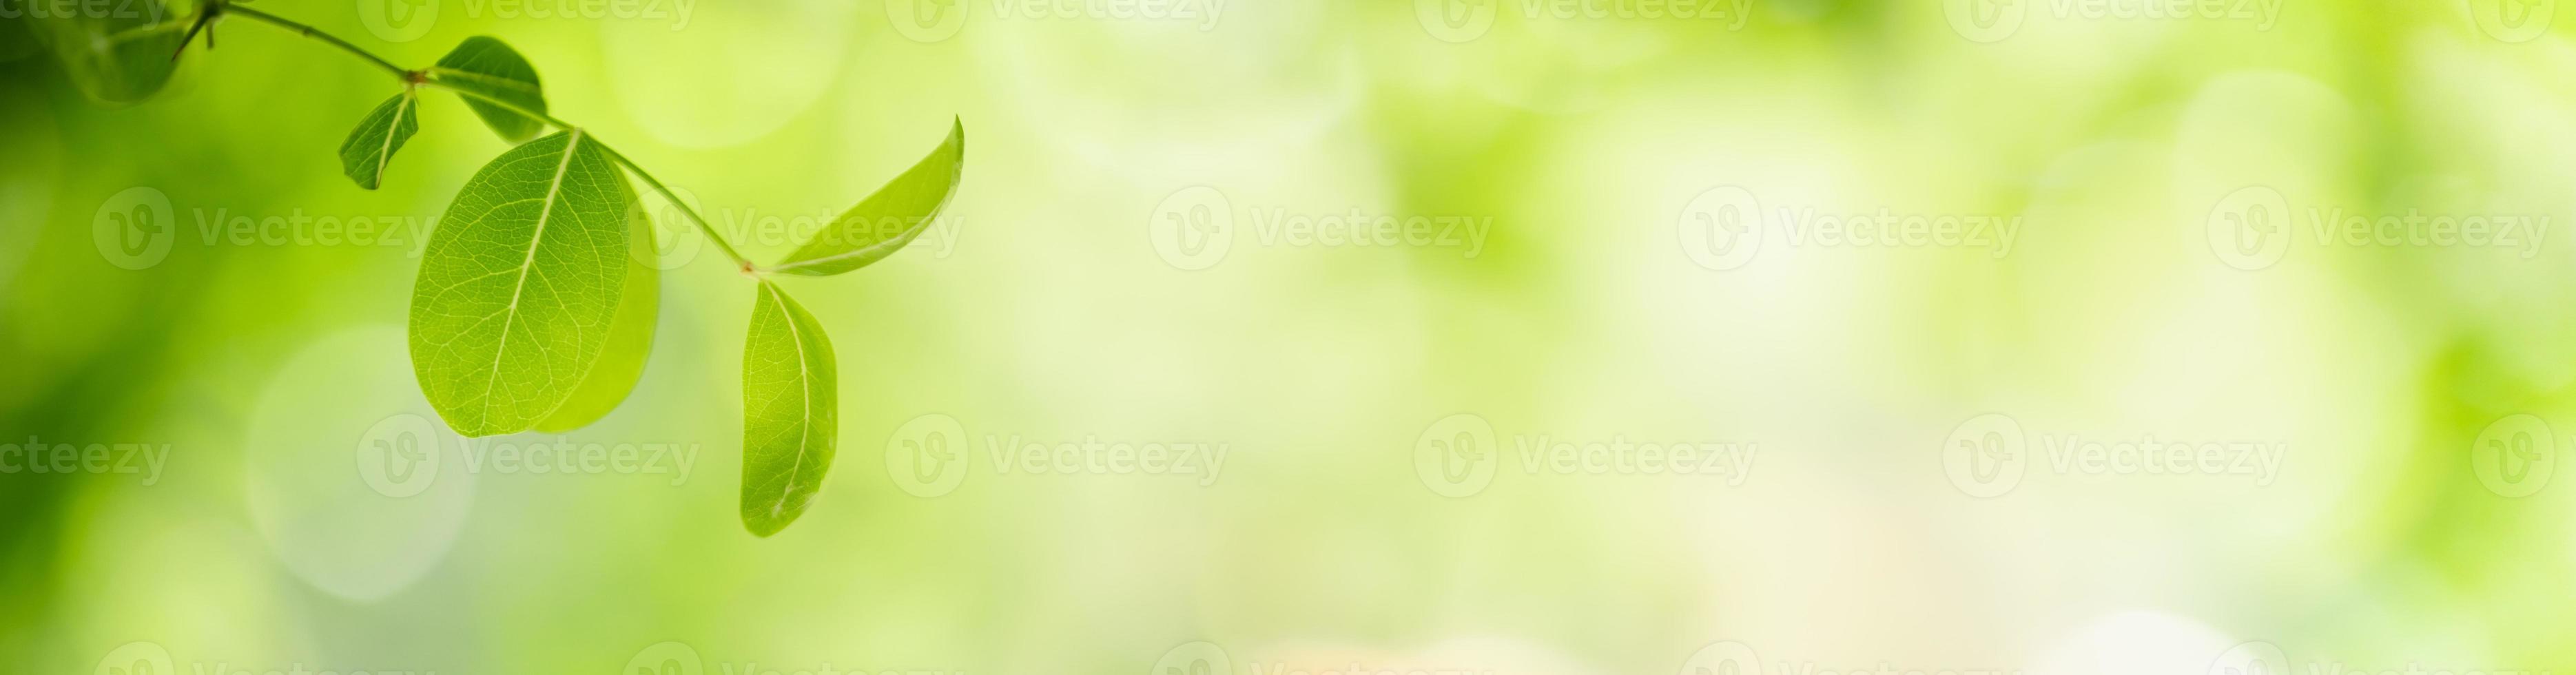 naturaleza de la hoja verde en el jardín en verano. plantas de hojas verdes naturales que usan como fondo de primavera portada vegetación medio ambiente ecología papel tapiz foto